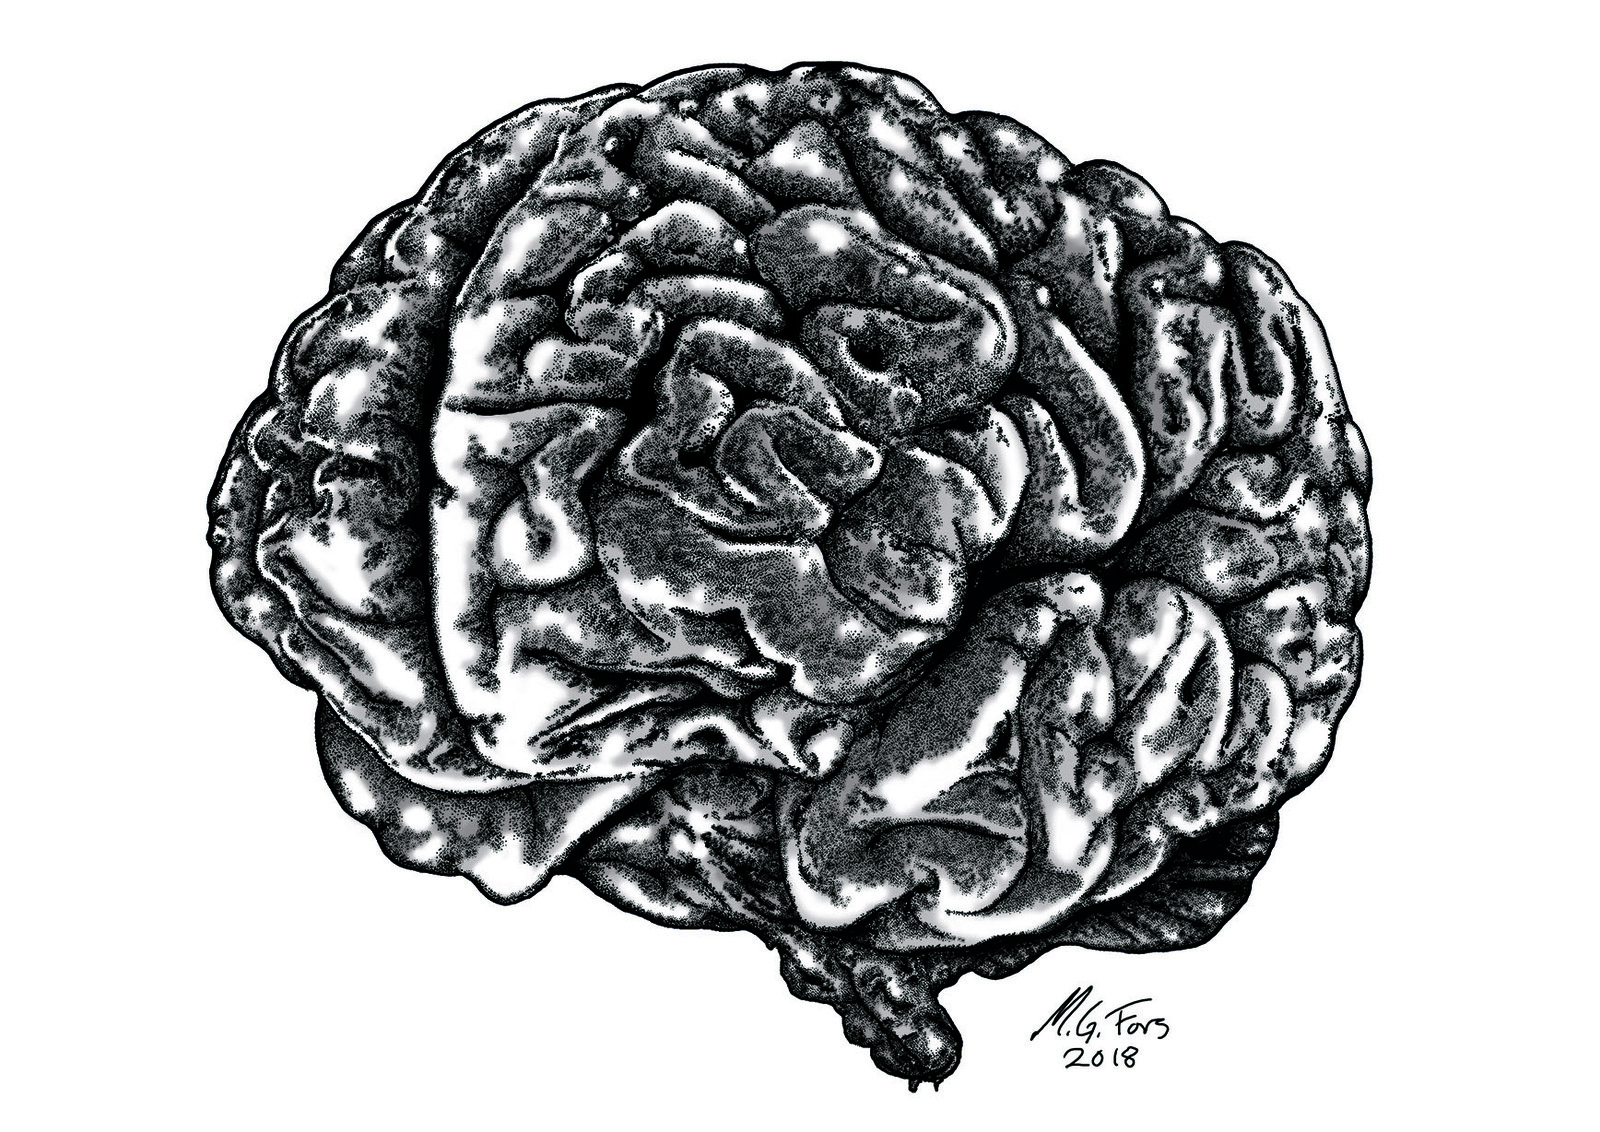 Anatomical Brain